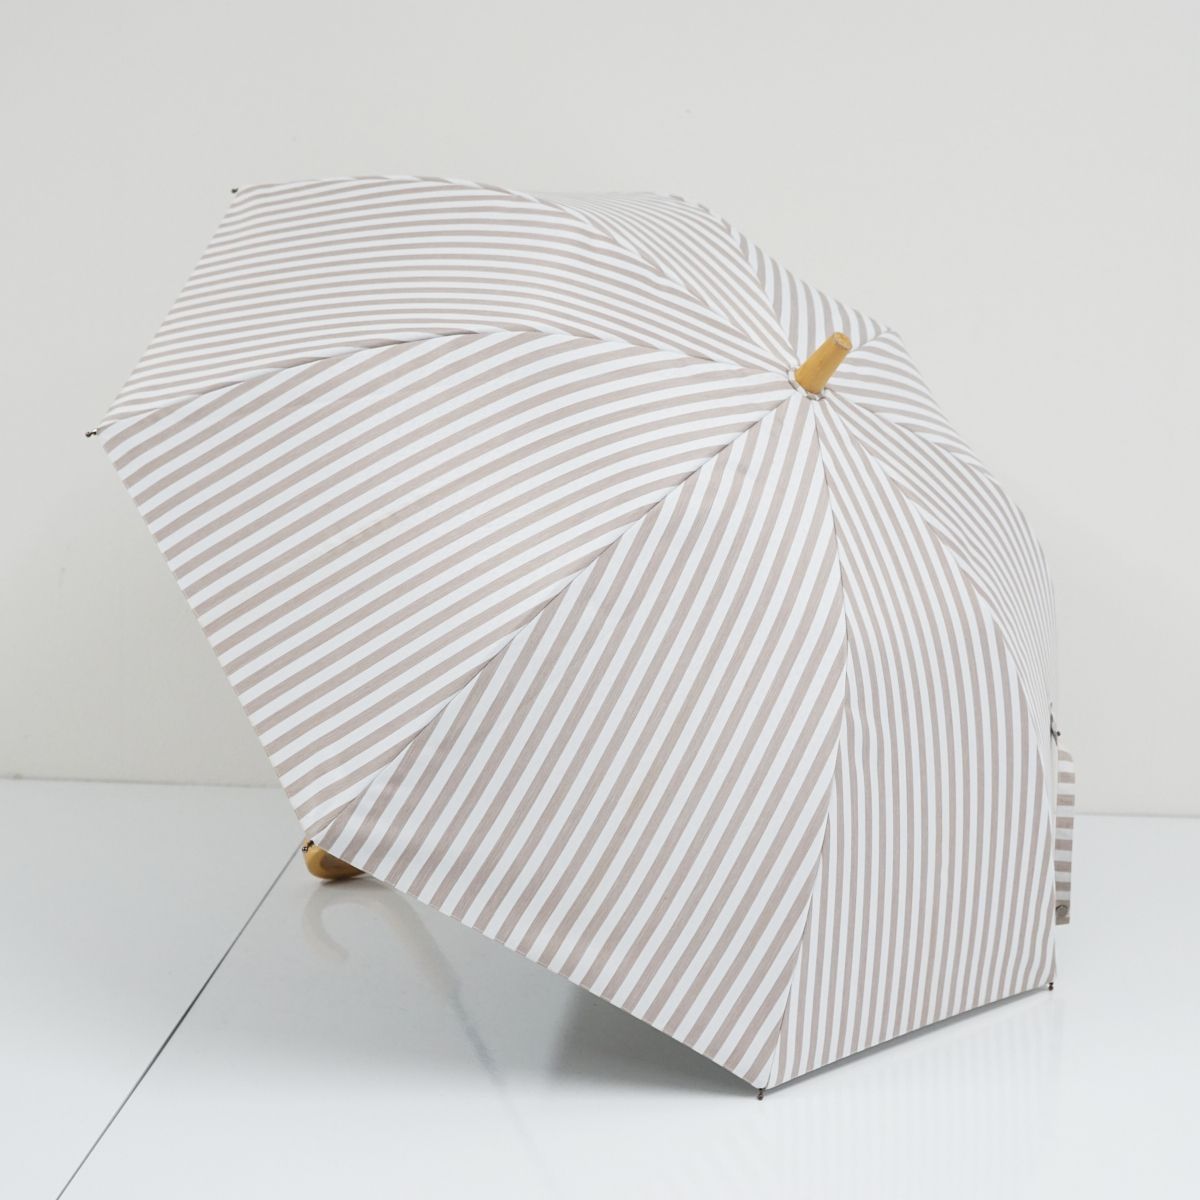 限定 日傘 サンバリア100 完全遮光折日傘 USED美品 3段折 黒 